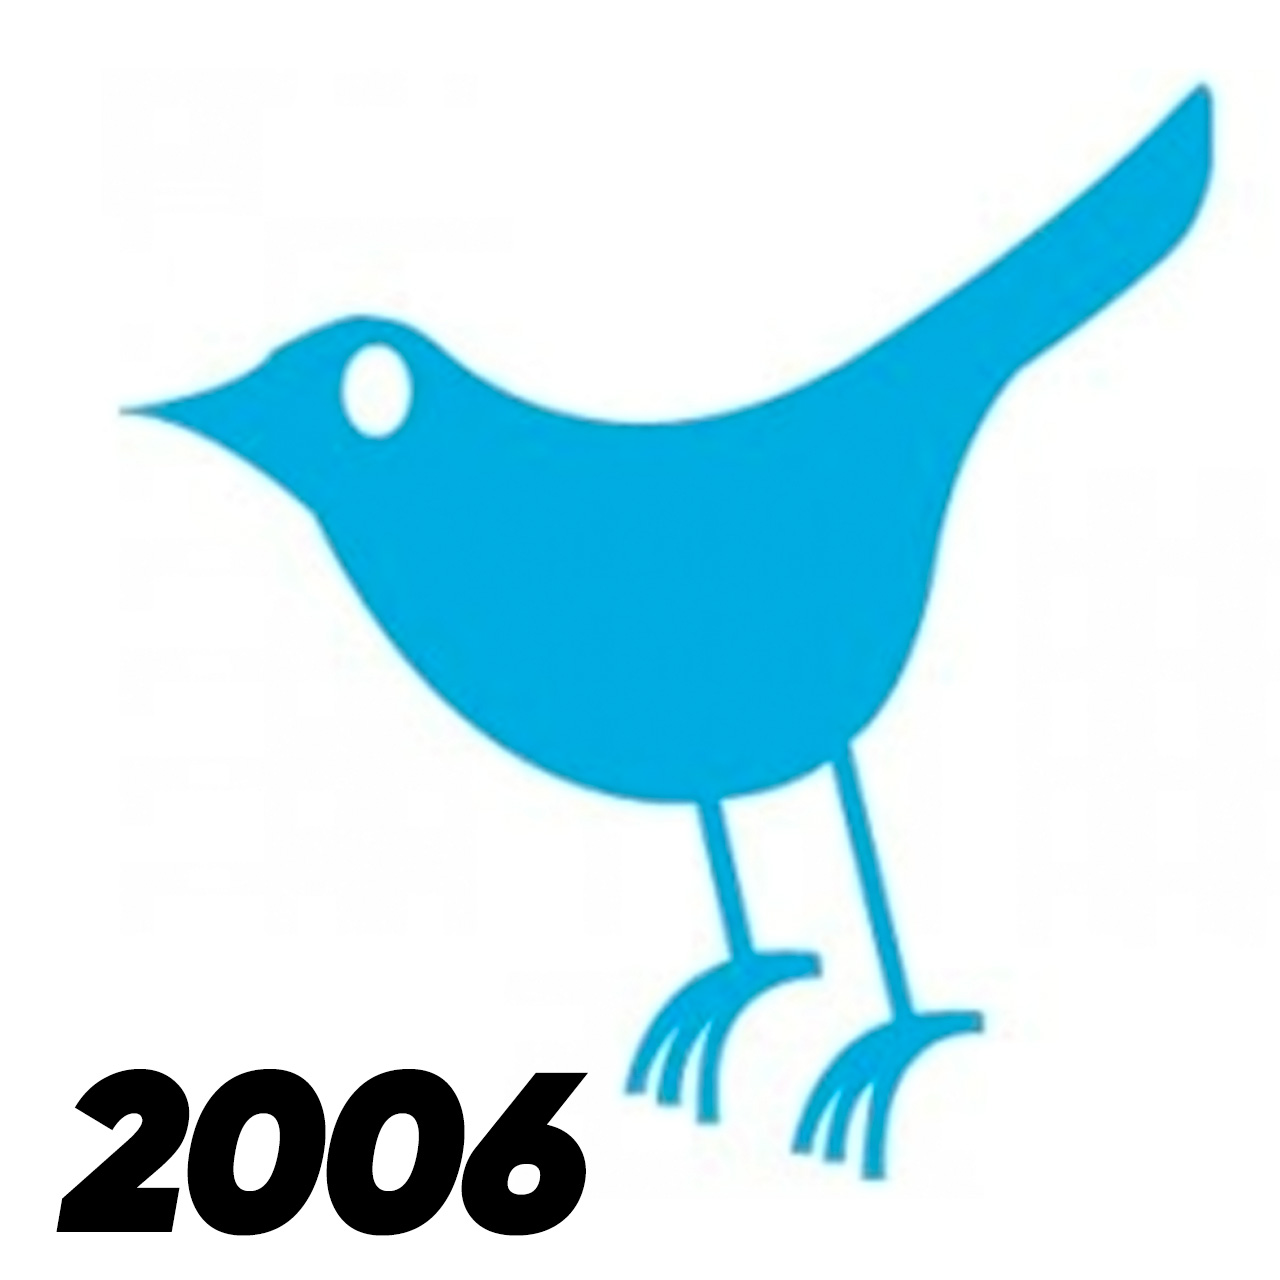 Twitter's first bird